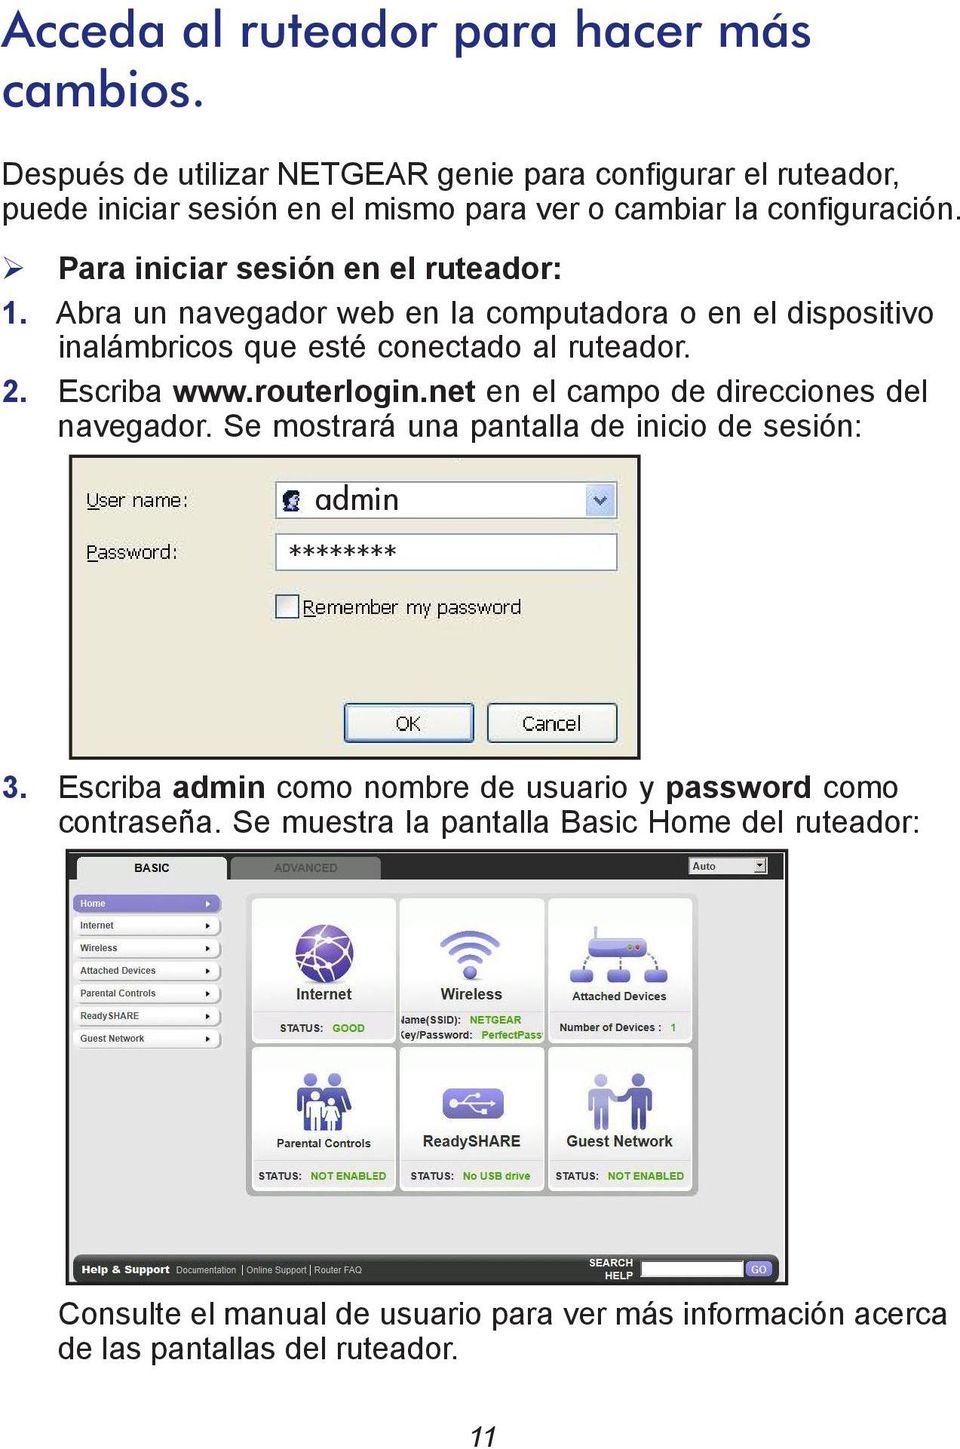 Para iniciar sesión en el ruteador: 1. Abra un navegador web en la computadora o en el dispositivo inalámbricos que esté conectado al ruteador. 2. Escriba www.